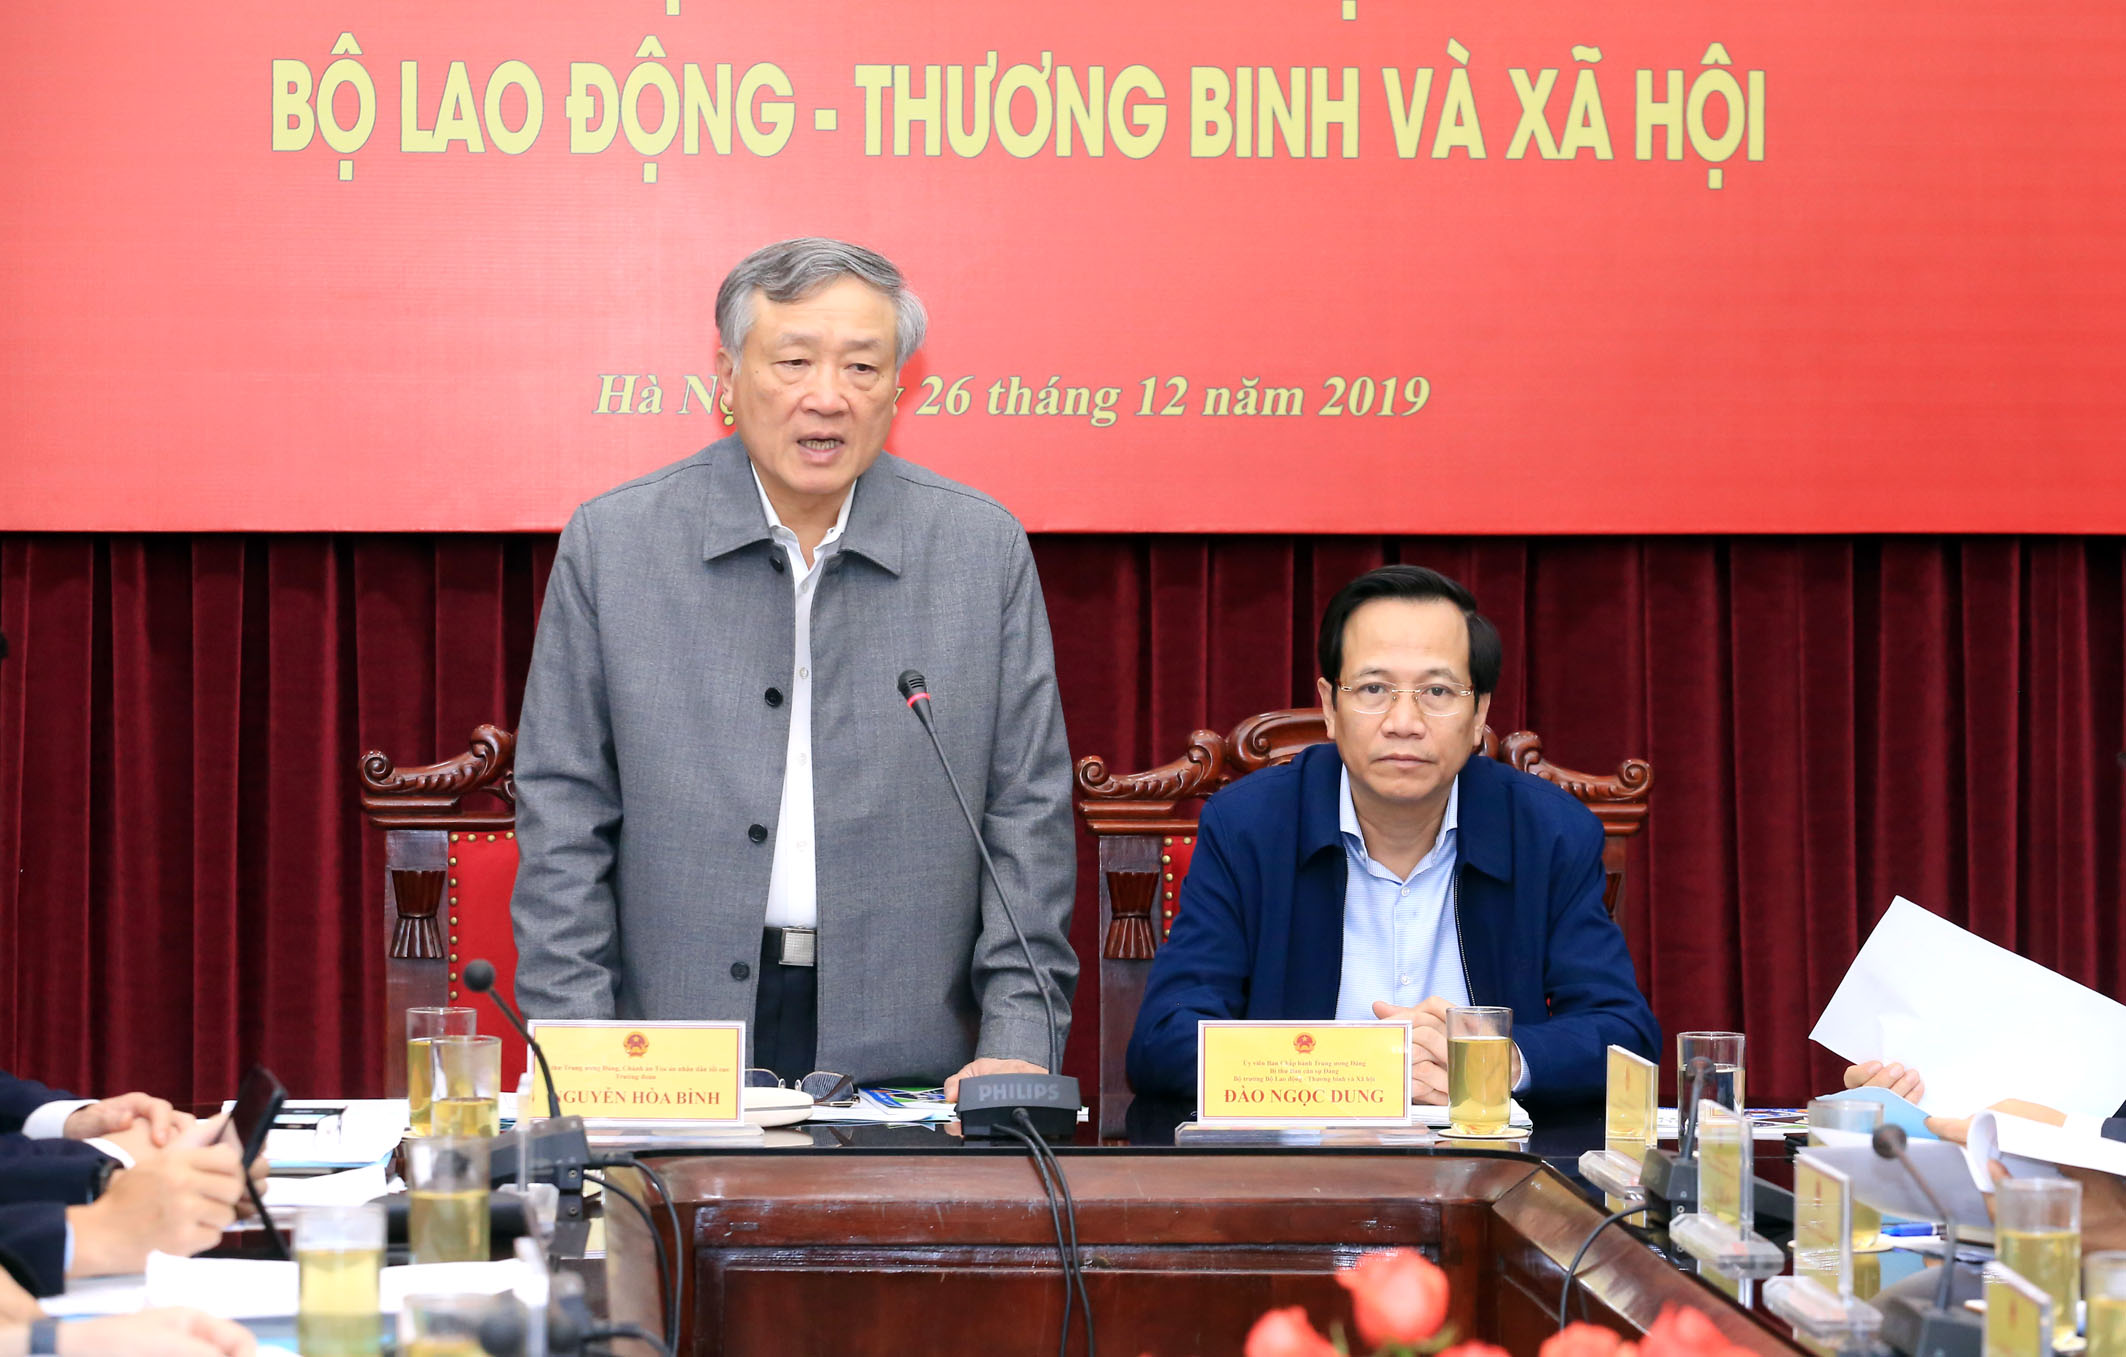 Đồng chí Nguyễn Hòa Bình, Bí thư Trung ương Đảng, Chánh án Tòa án nhân dân tối cao, Ủy viên Ban Chỉ đạo Trung ương về PCTN phát biểu chỉ đạo